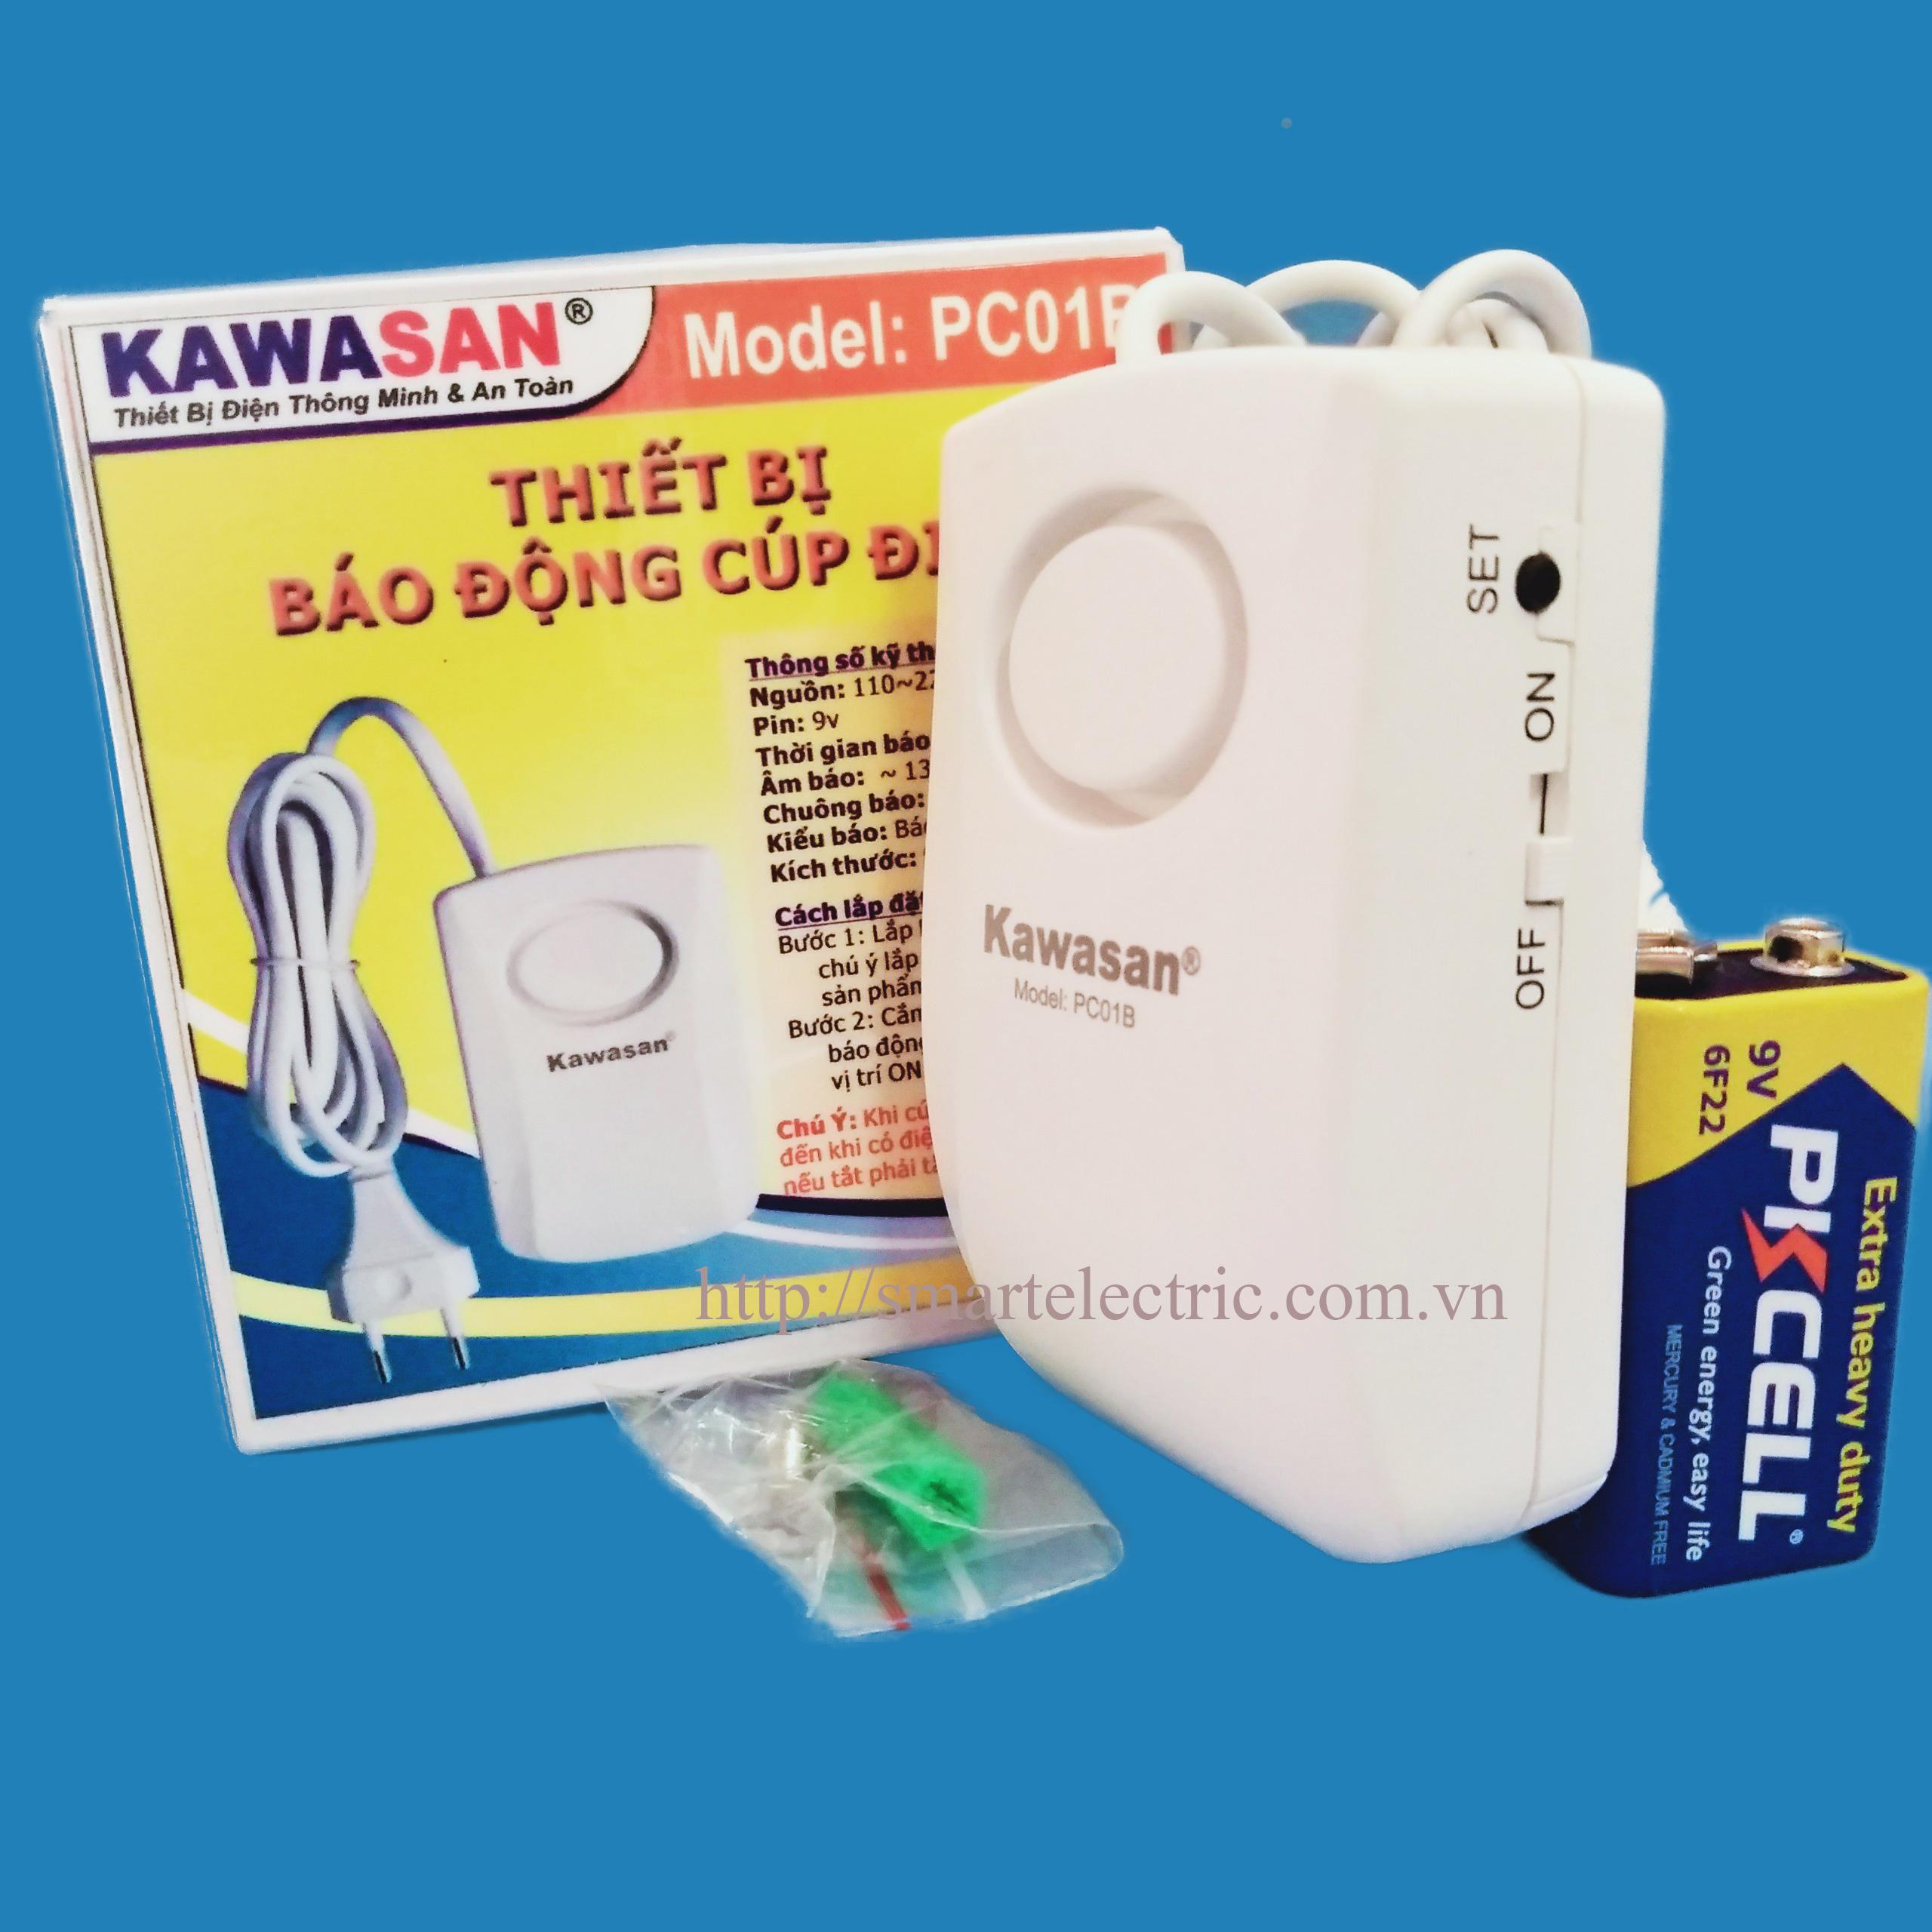 Báo động cúp điện Kawa PC01B